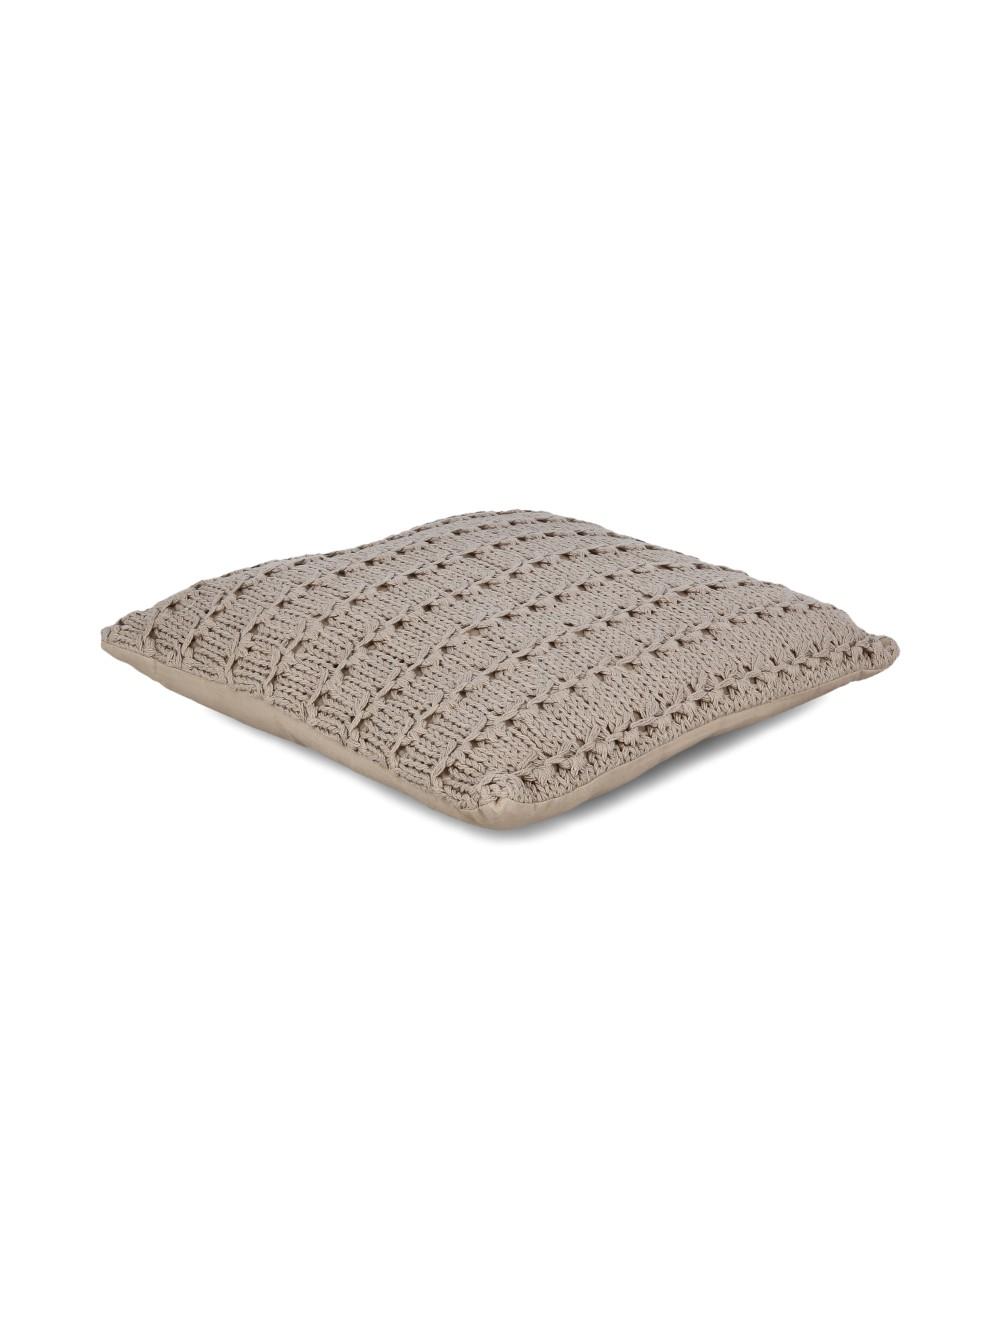 Selected image for GIFTDECOR Ukrasni braon vuneni jastuk 1 braon 45x45cm